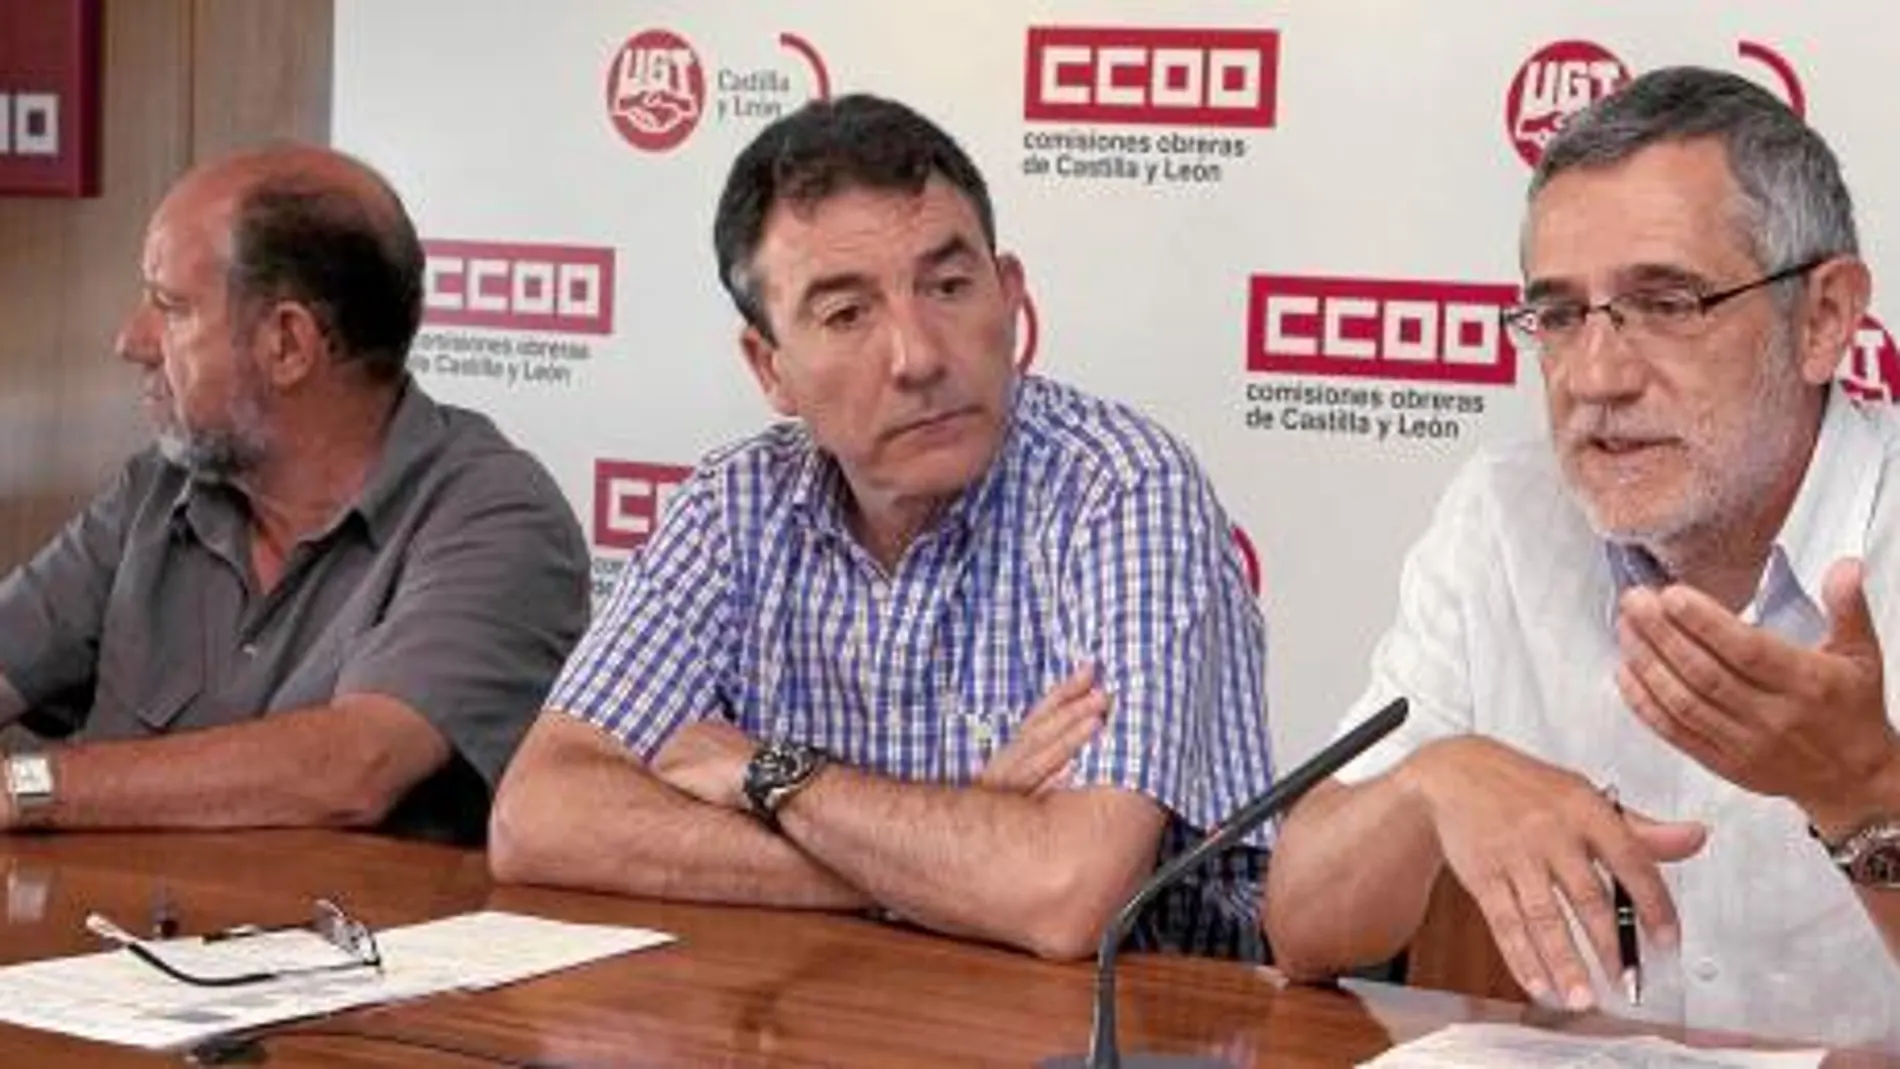 Los sindicatos empujan a Herrera a la insumisión contra los recortes de Rajoy